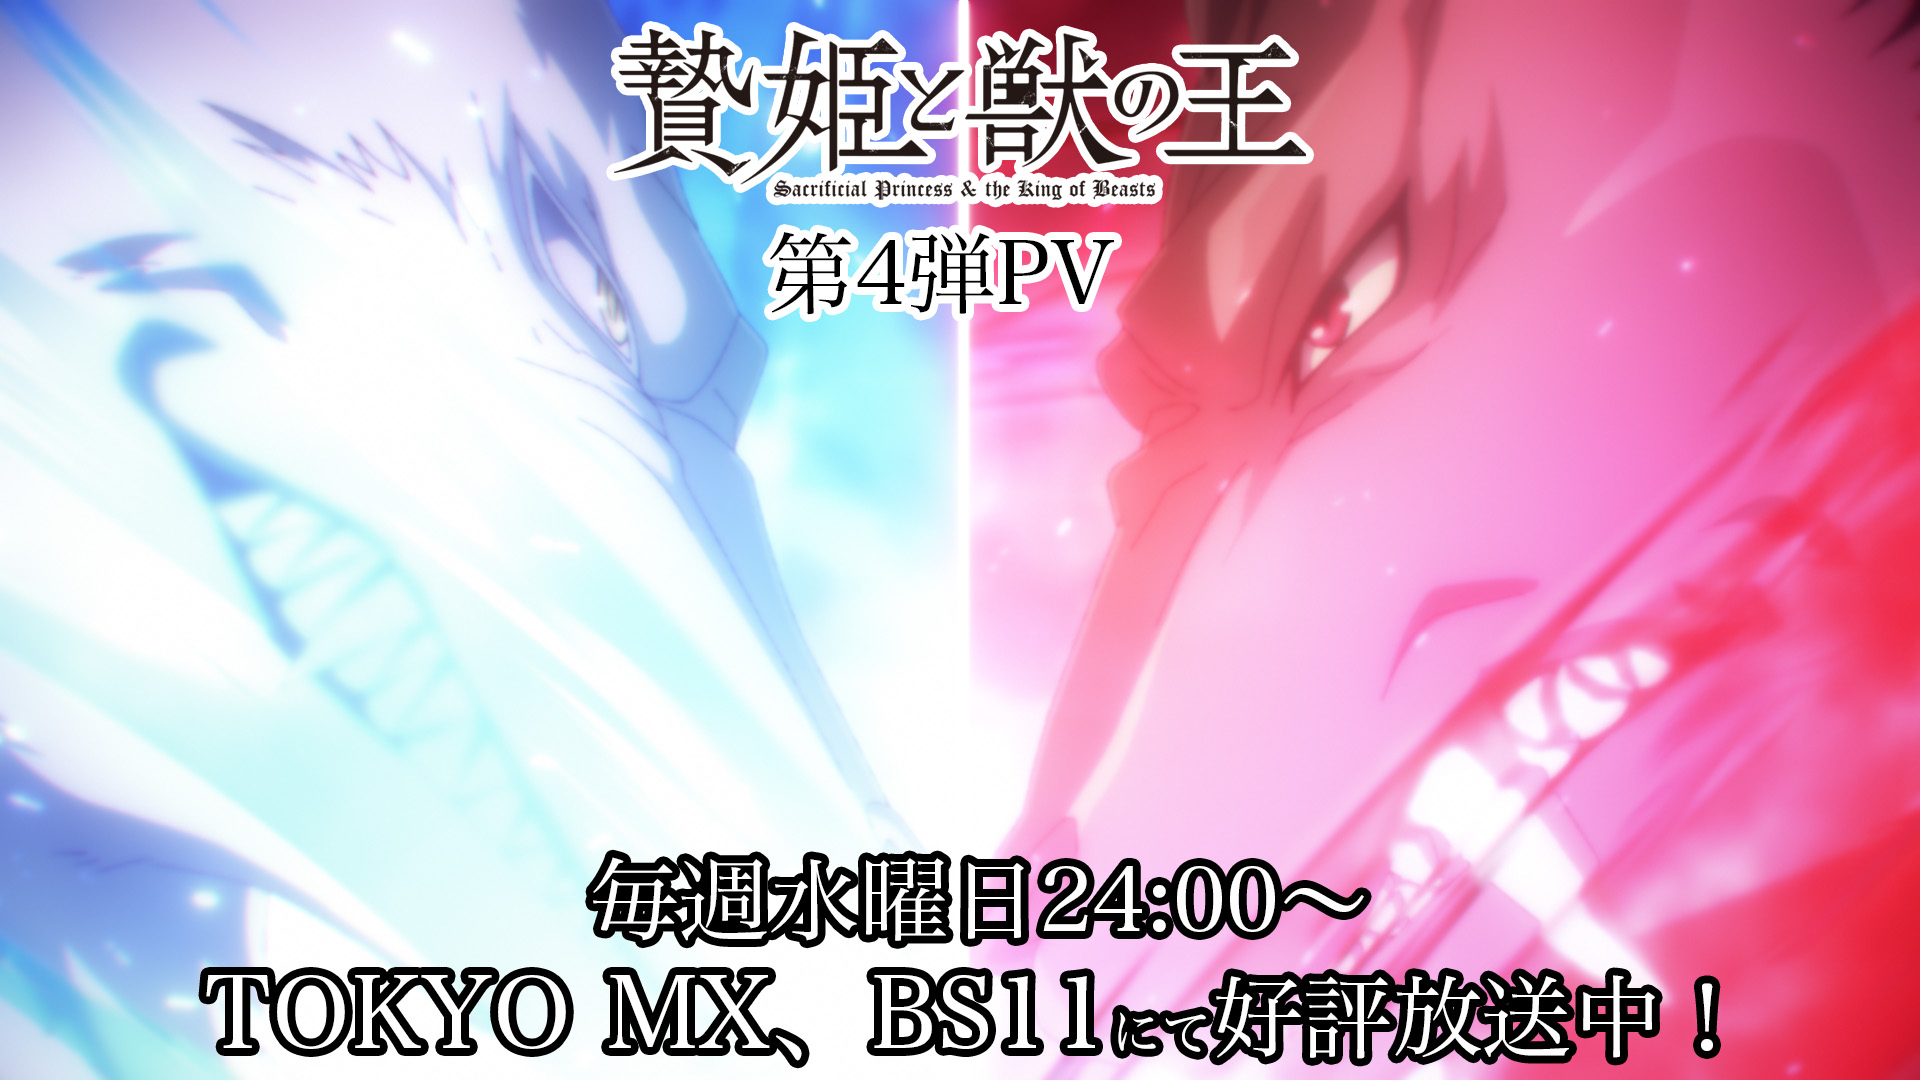 TVアニメ「贄姫と獣の王」第4弾PV！4月19日(水)24:00〜TOKYO MX、BS11にて放送中！